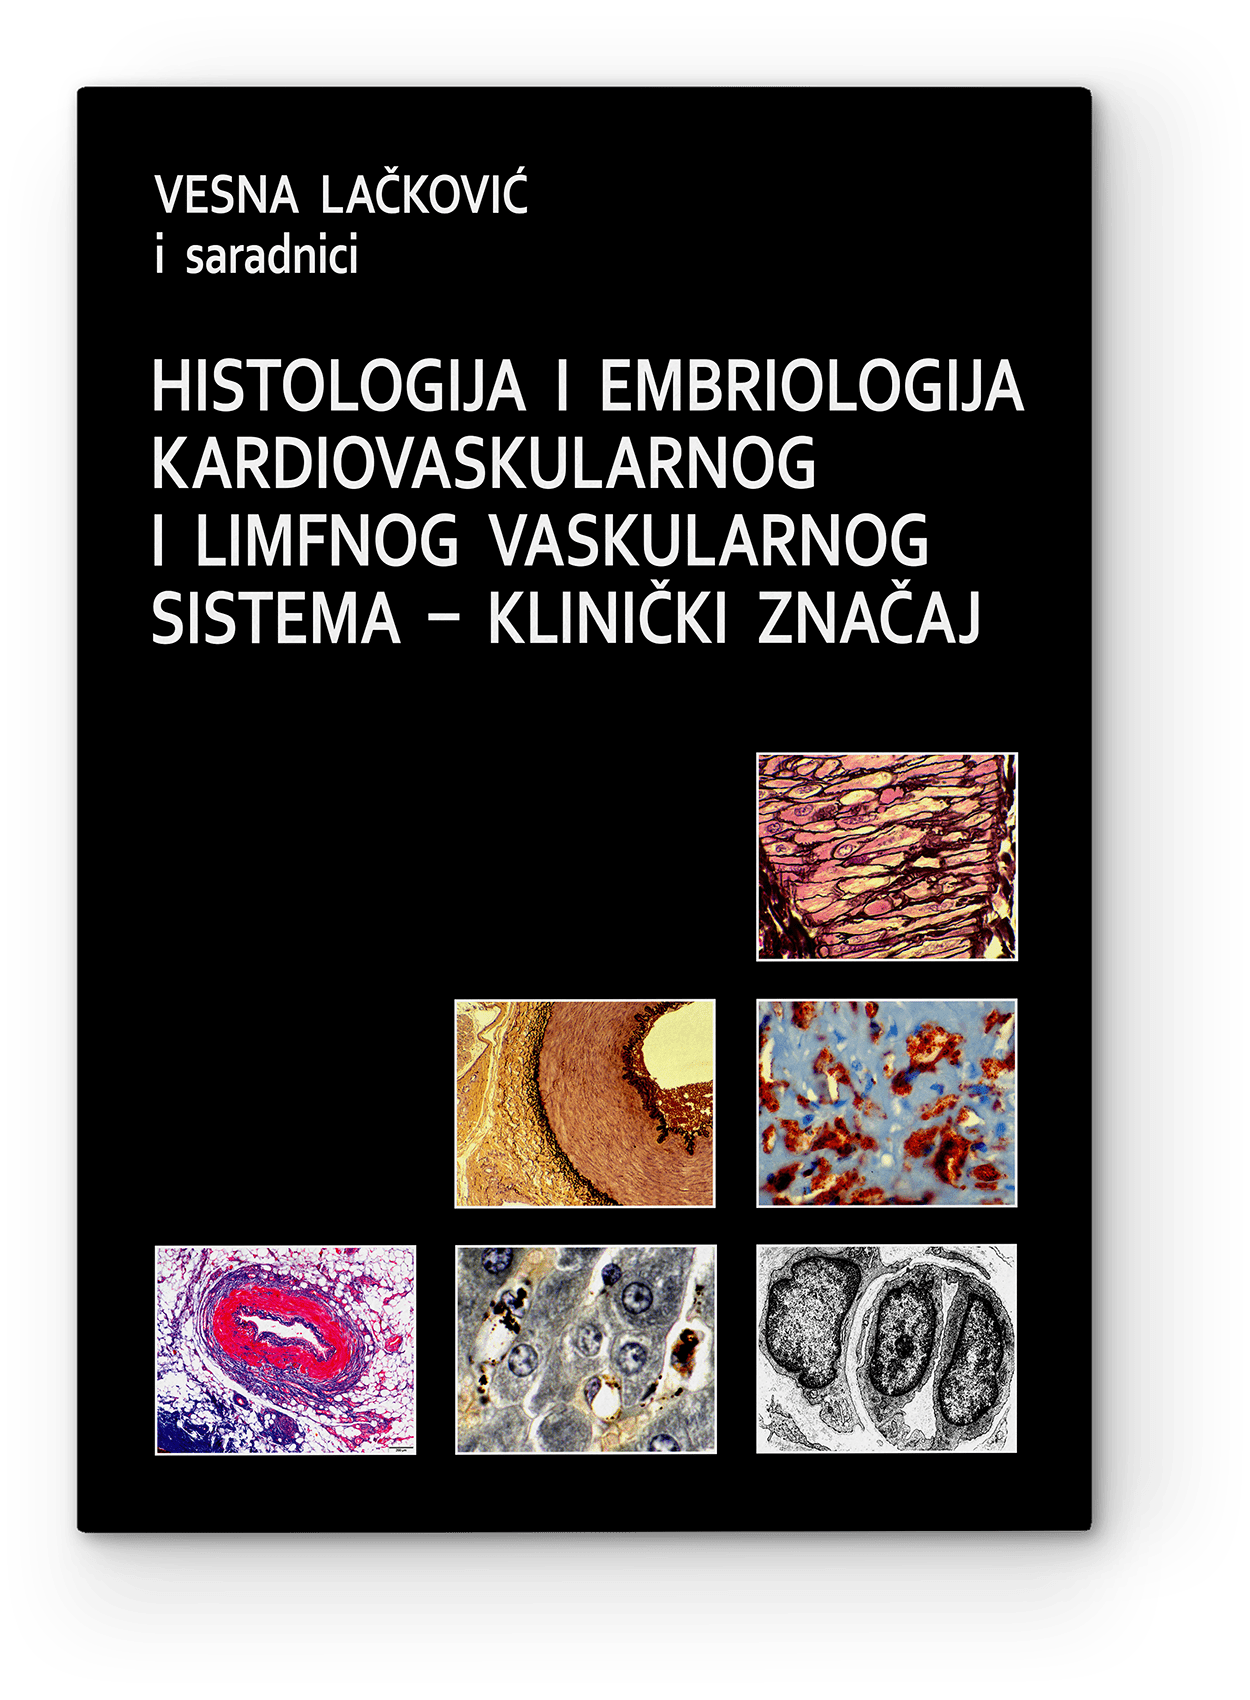 Vesna Lačković i saradnici: Histologija i embriologija kardiovaskularnog i limfnog vaskularnog sistema — klinički značaj